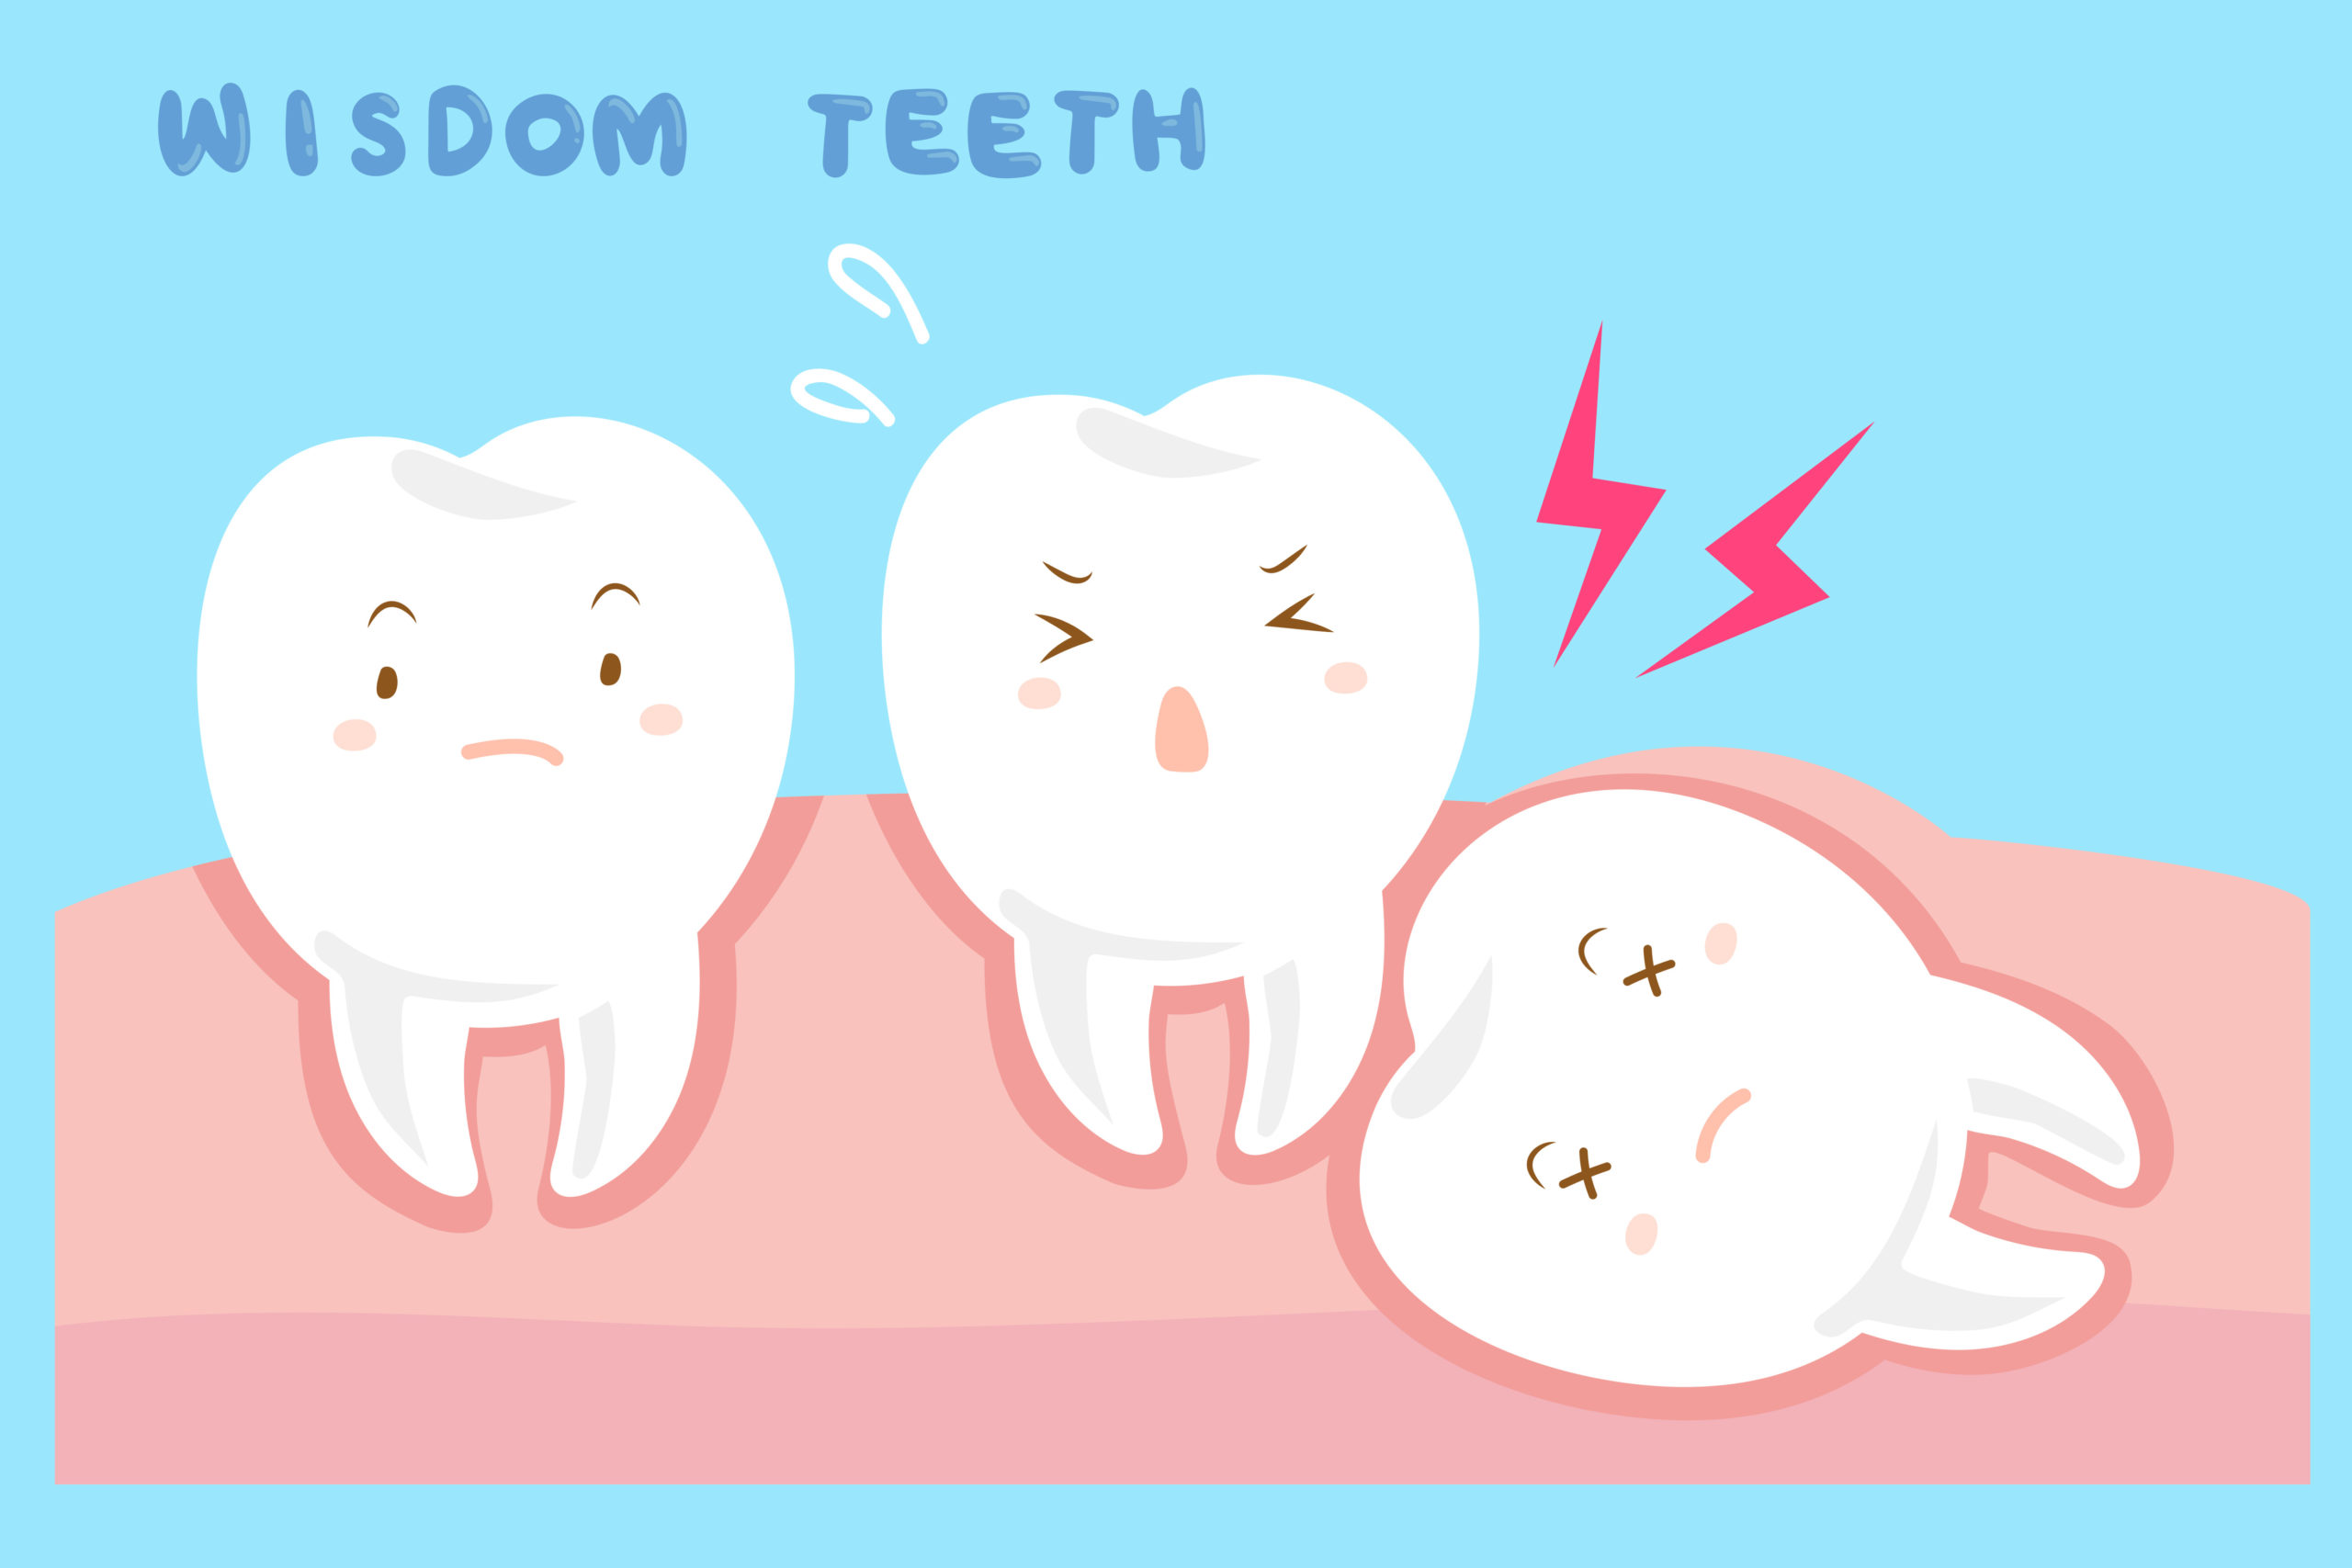 wisdom tooth cartoon